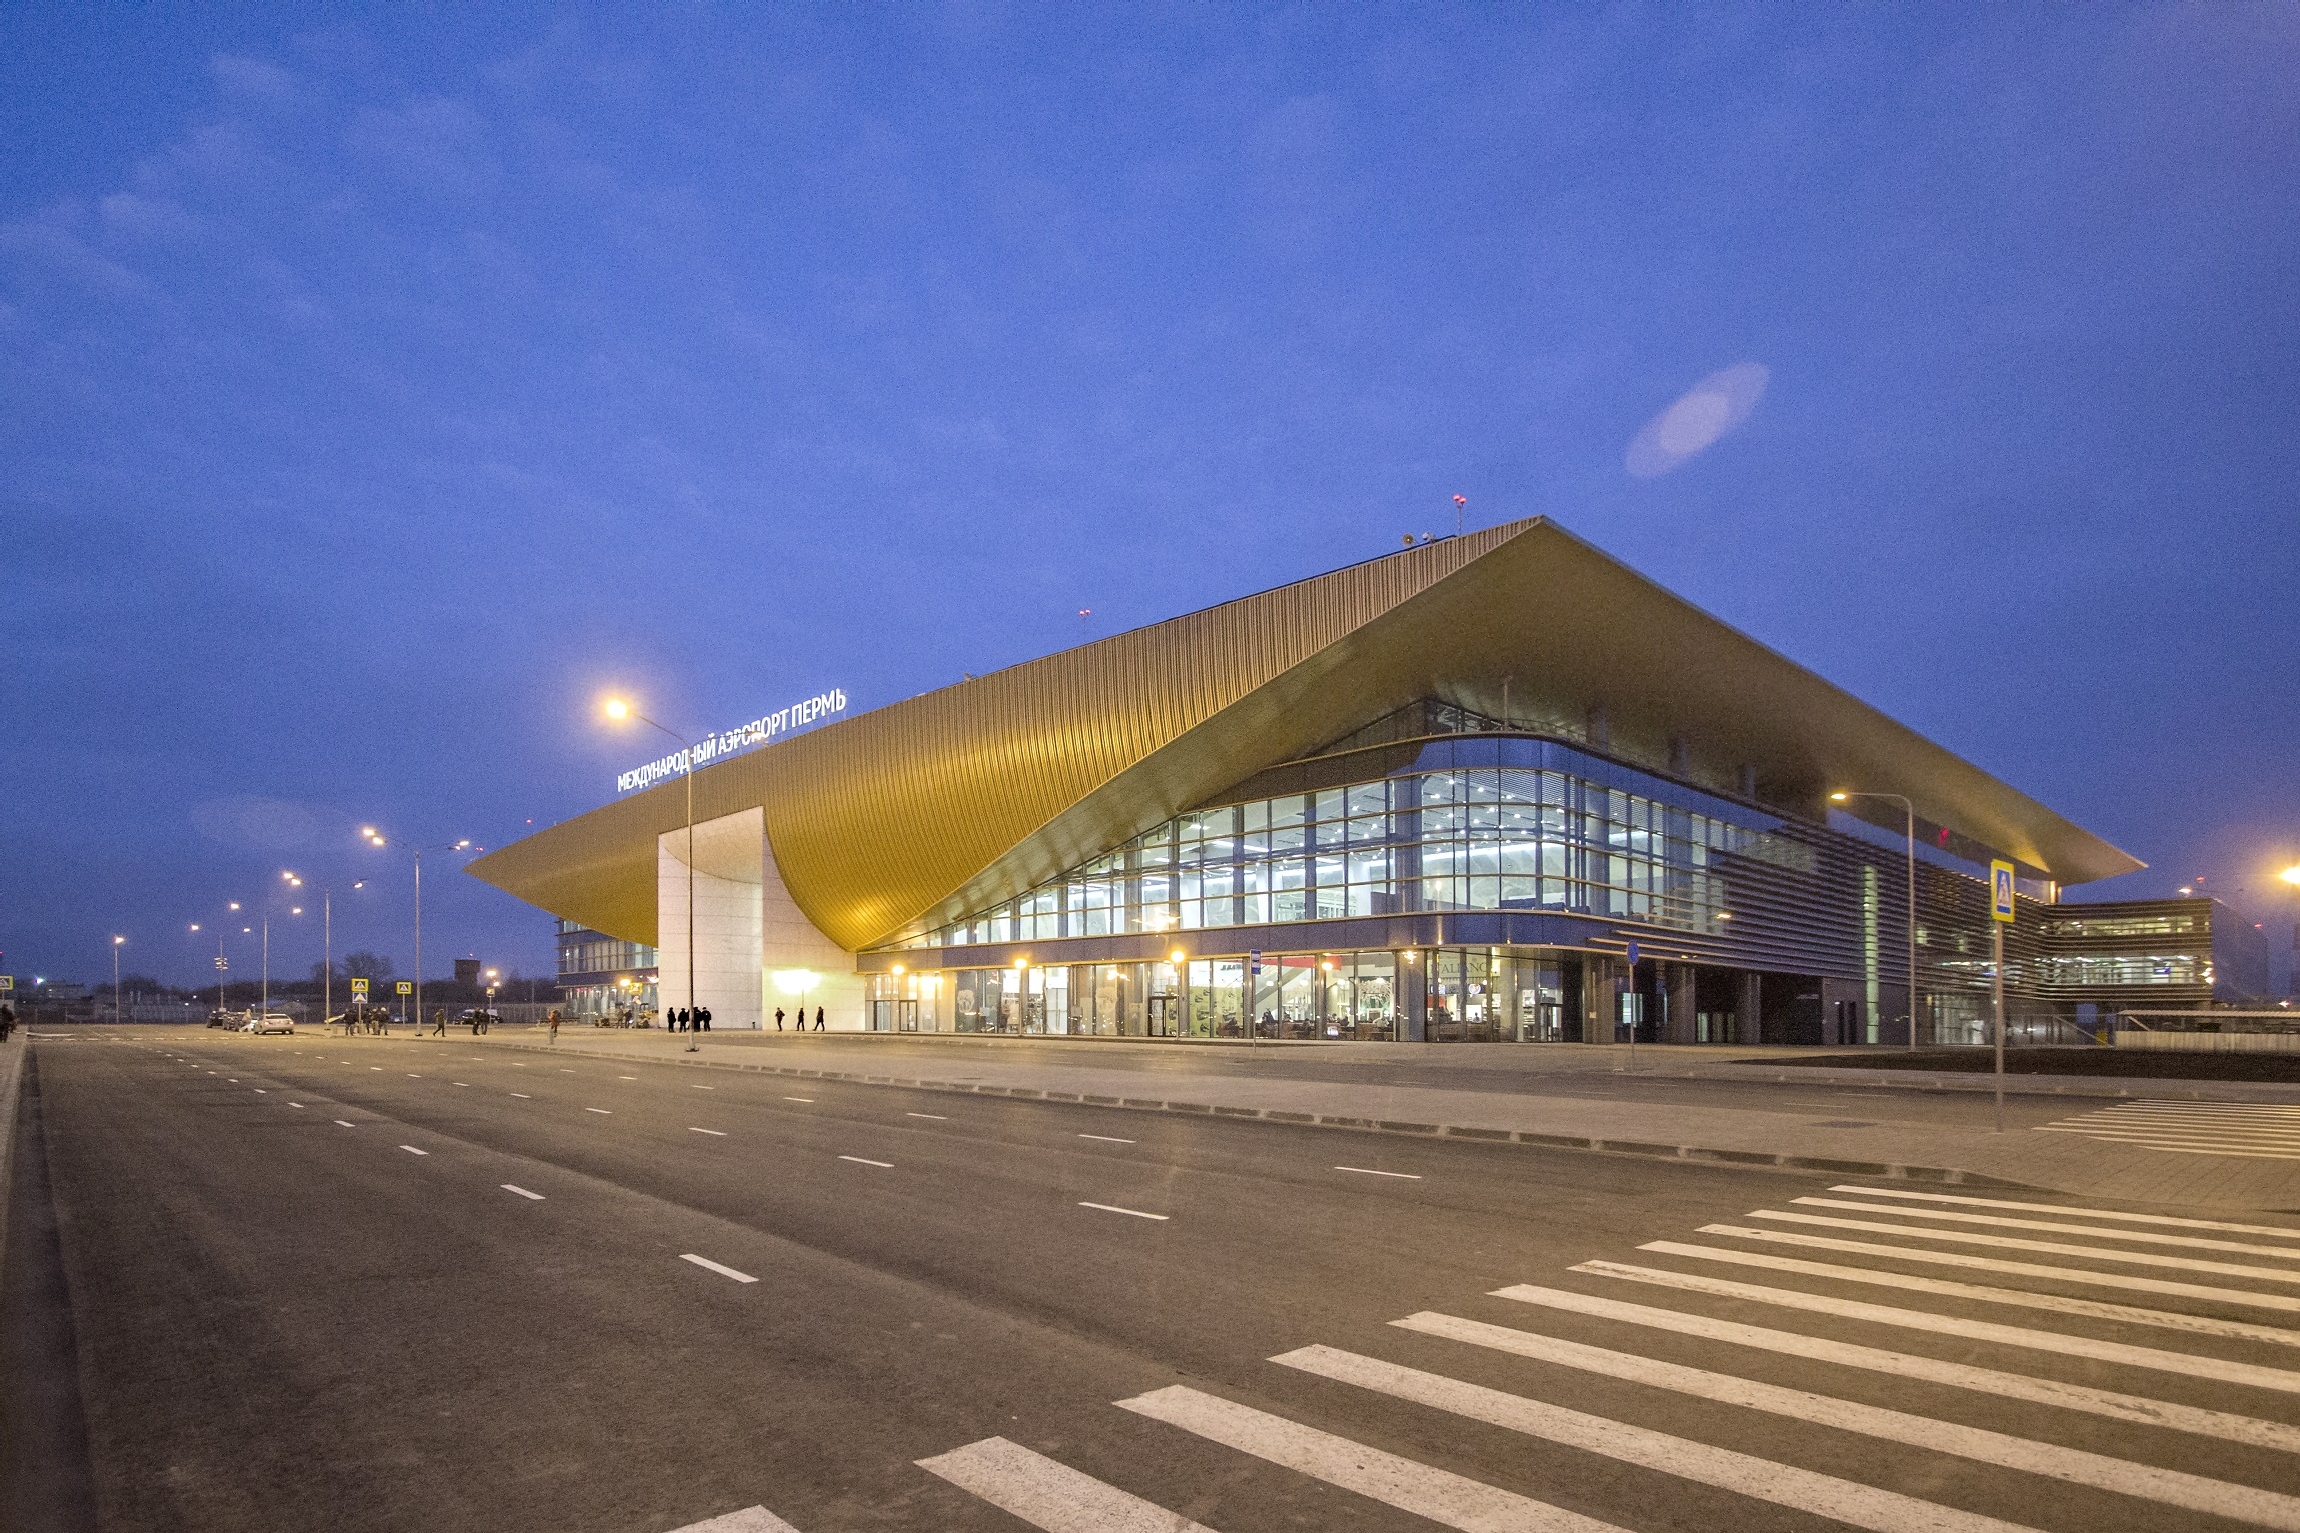 Аэропорт пермь